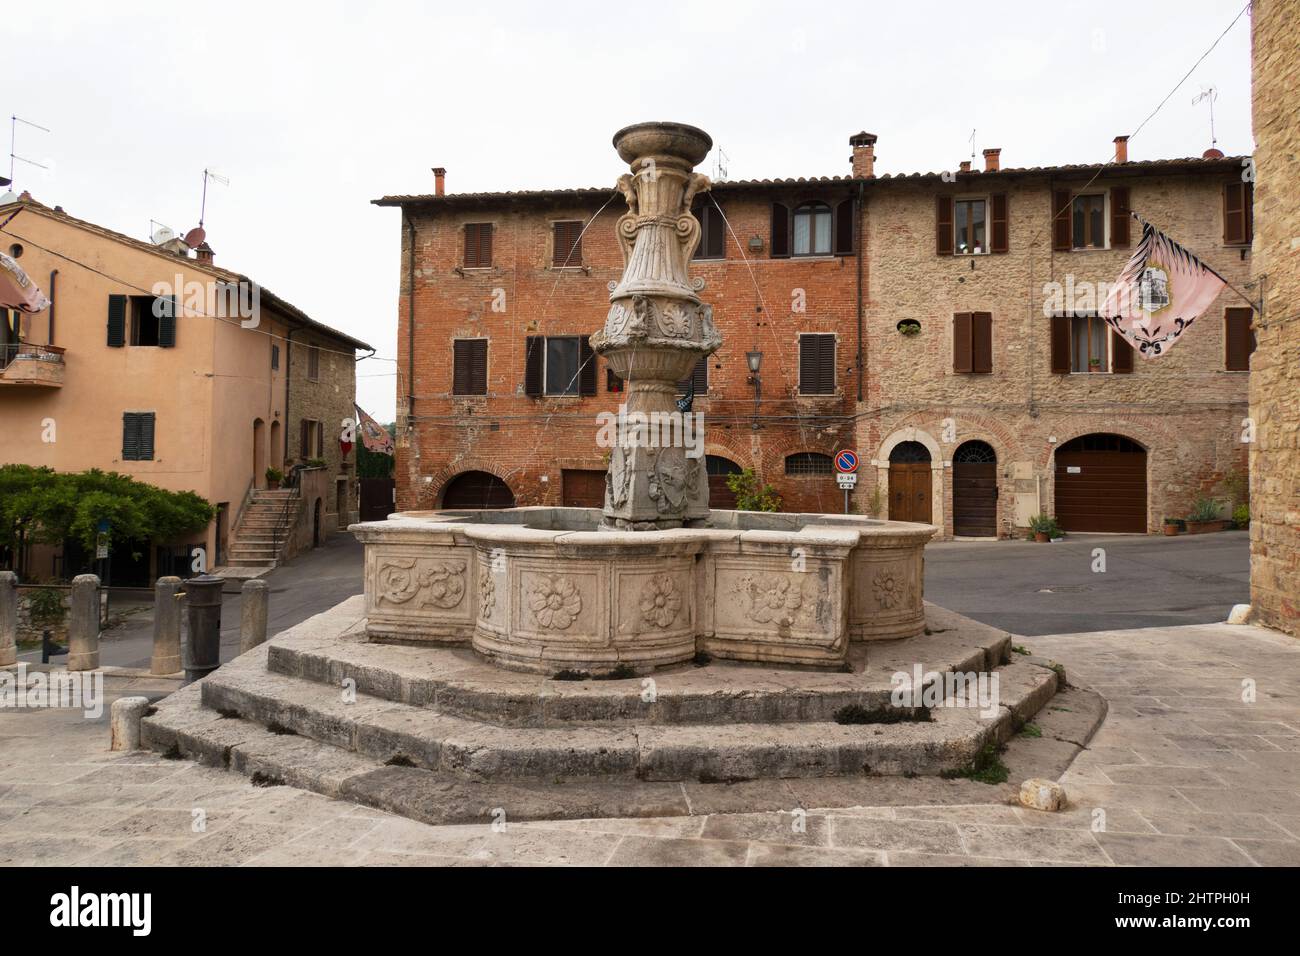 Ancient fountain of Piazza del Grano, Asciano village, Crete Senesi area, Siena province, Tuscany, Europe Stock Photo